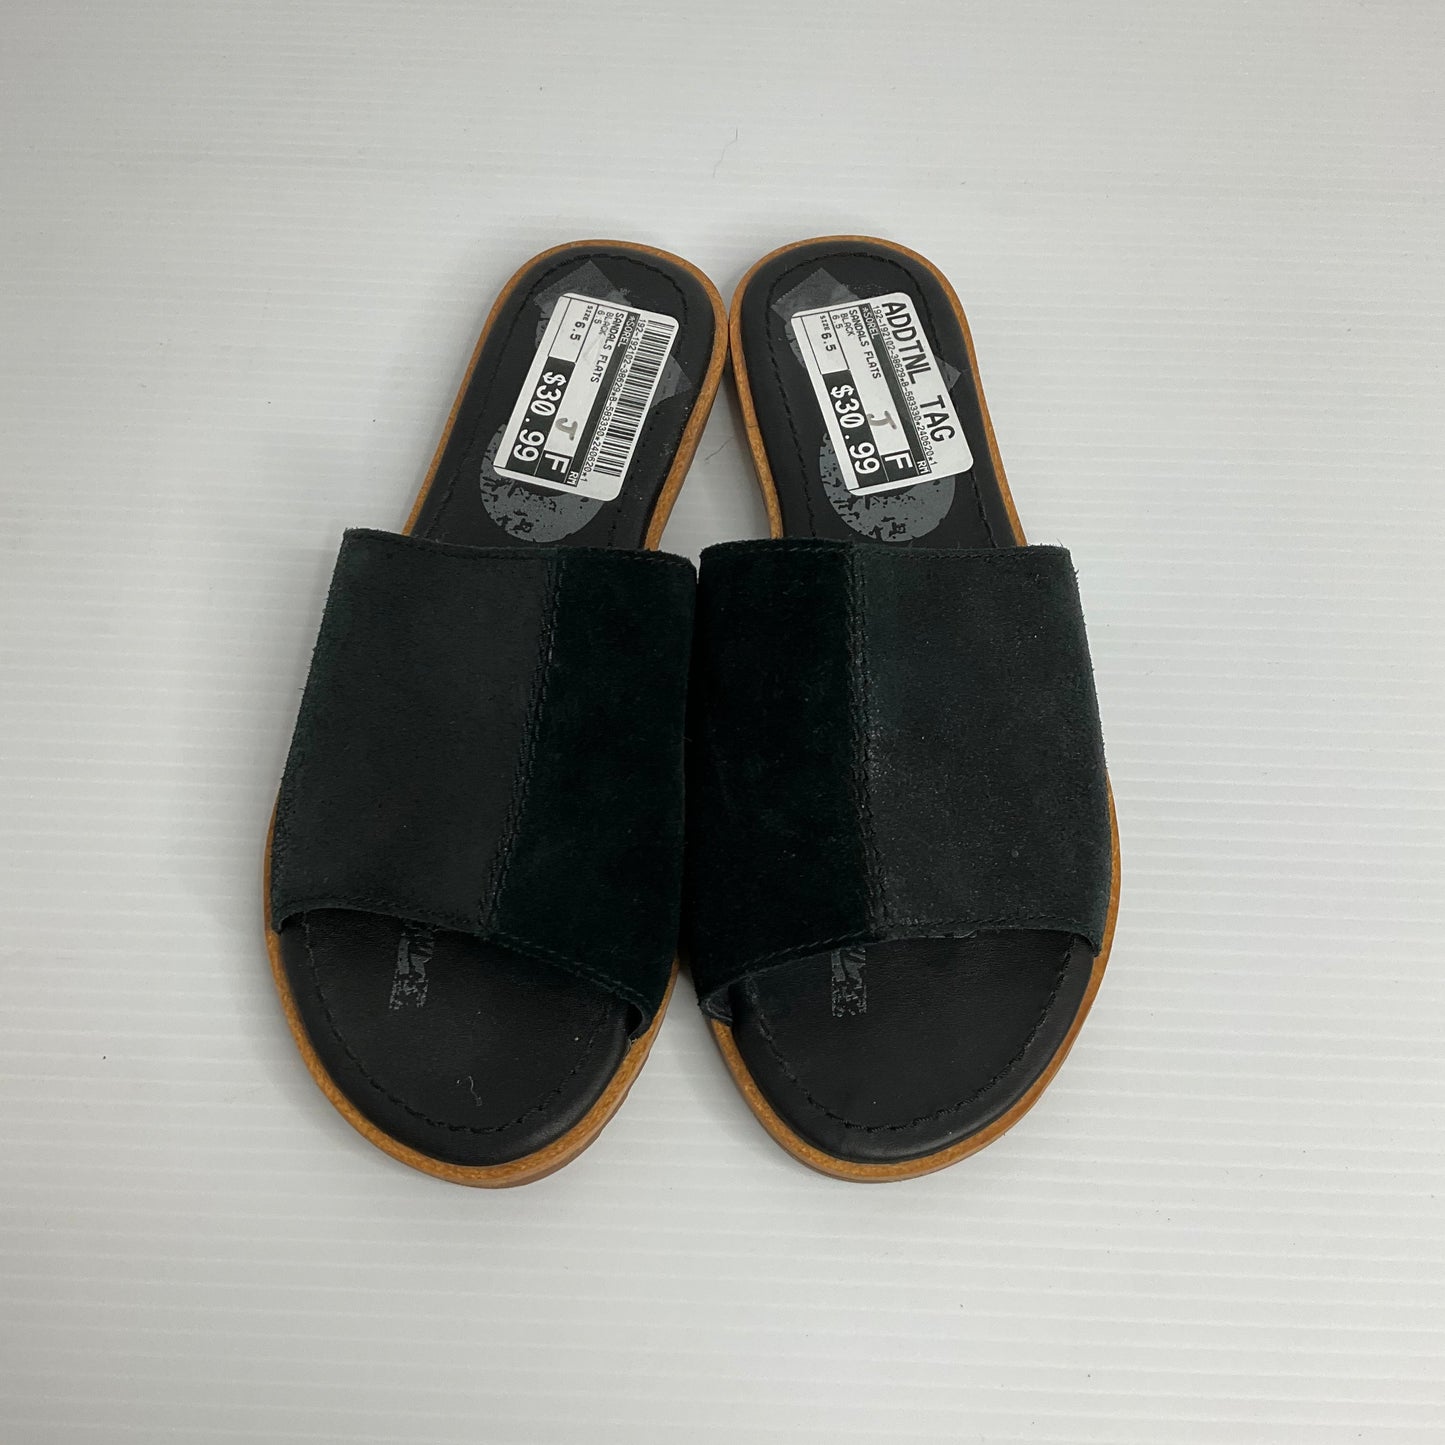 Black Sandals Flats Sorel, Size 6.5